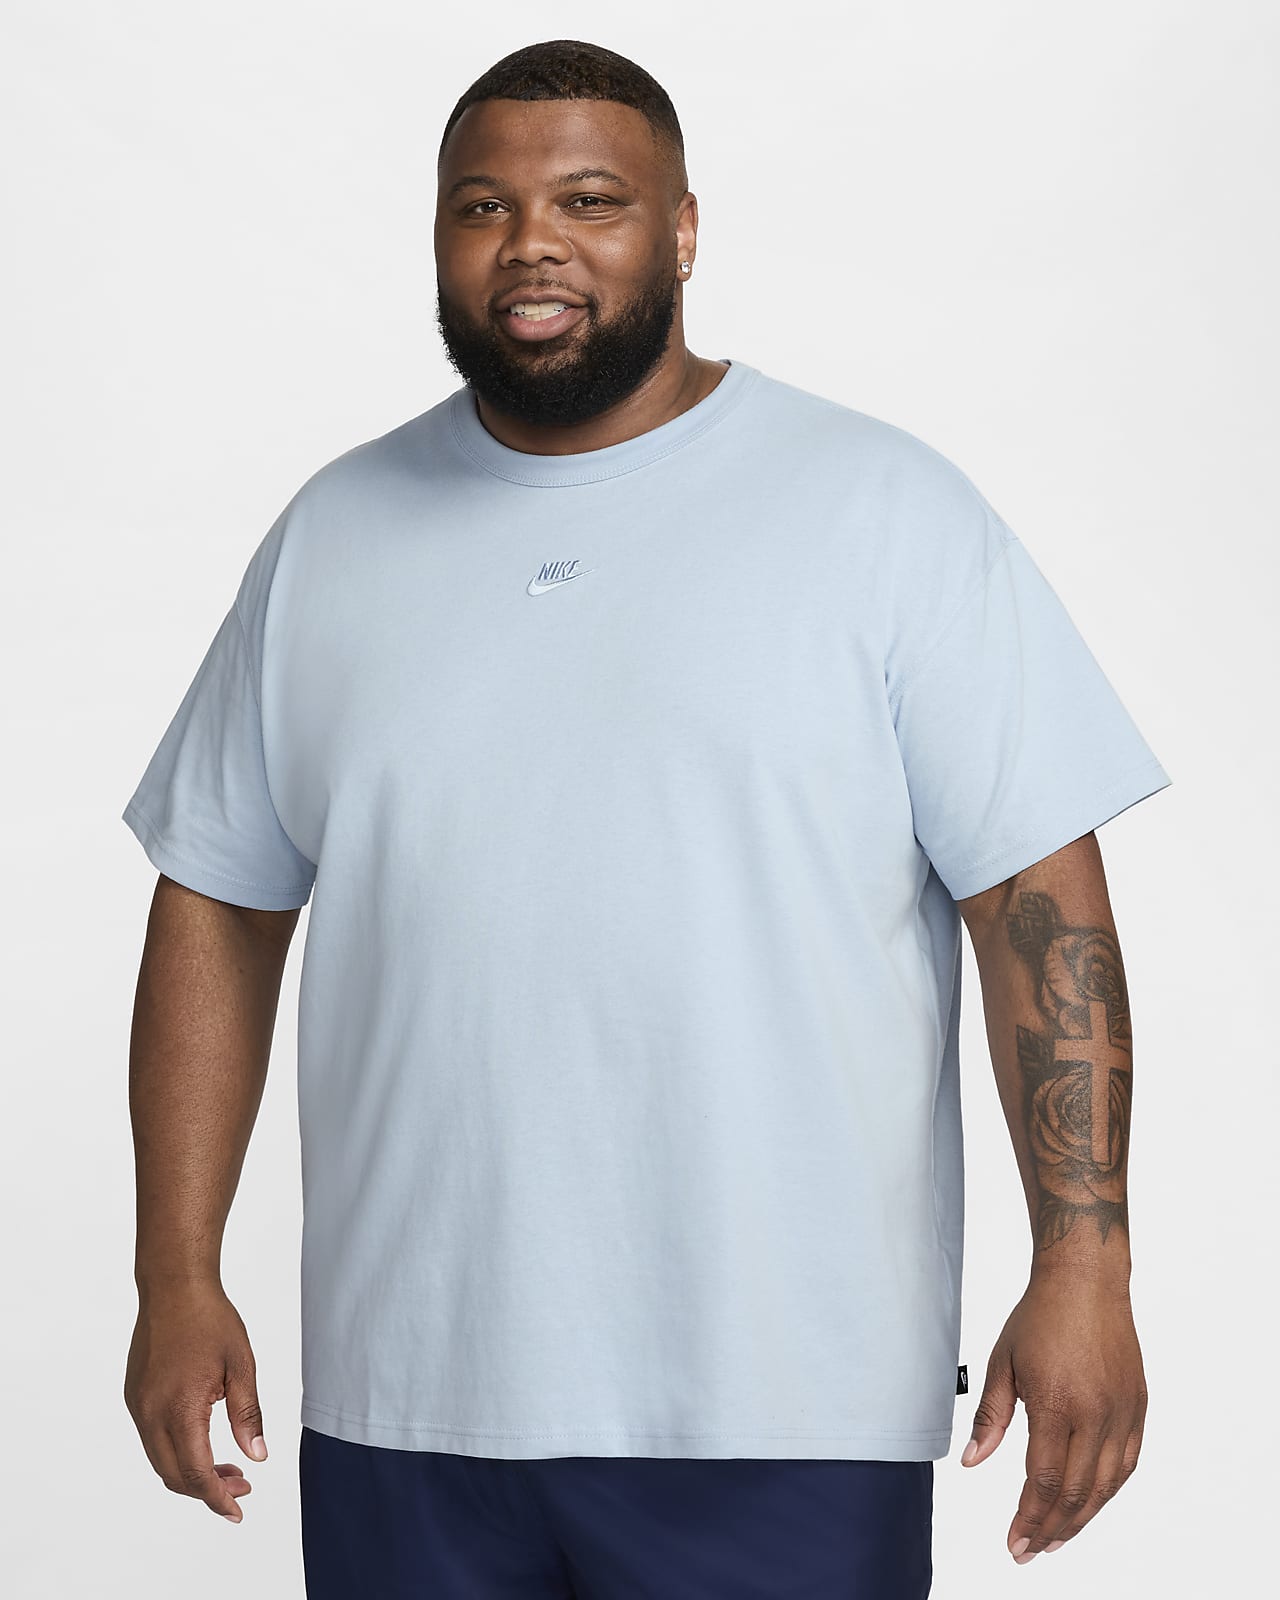 Dark Blue Nike Shirt Size 6